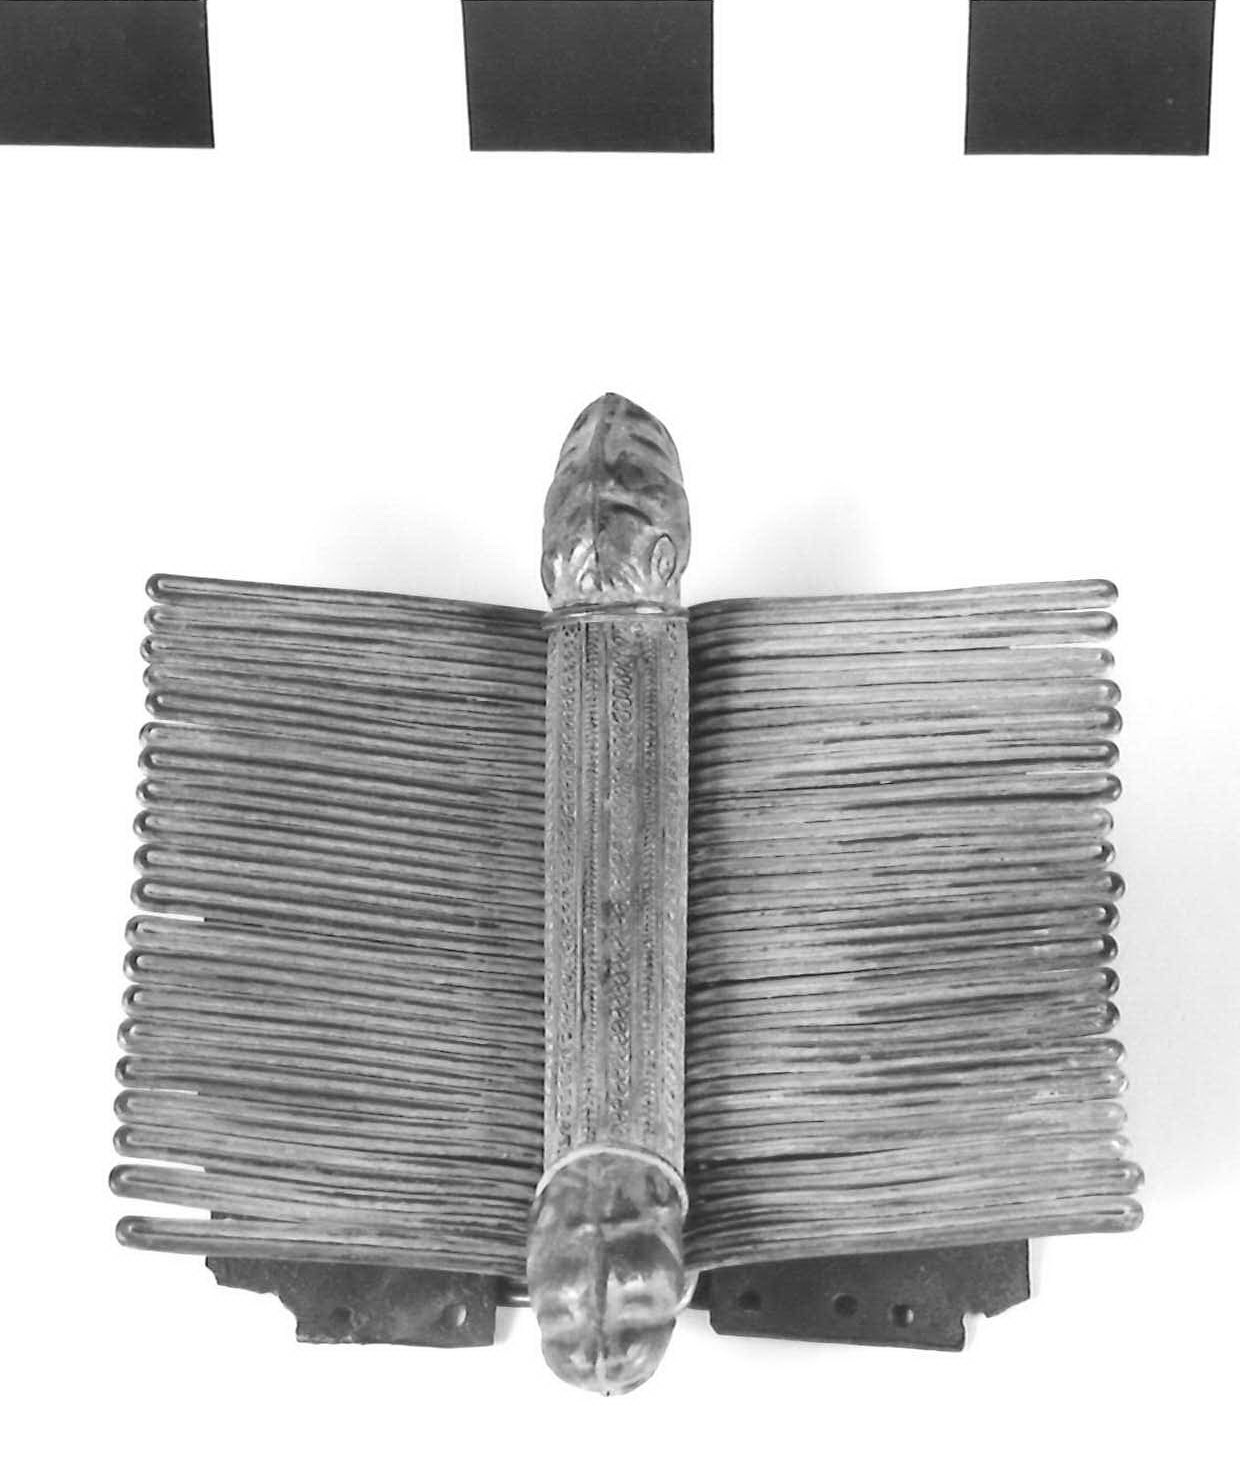 affibbiaglio a pettine - fase Piceno III (secondo quarto sec. VII a.C)